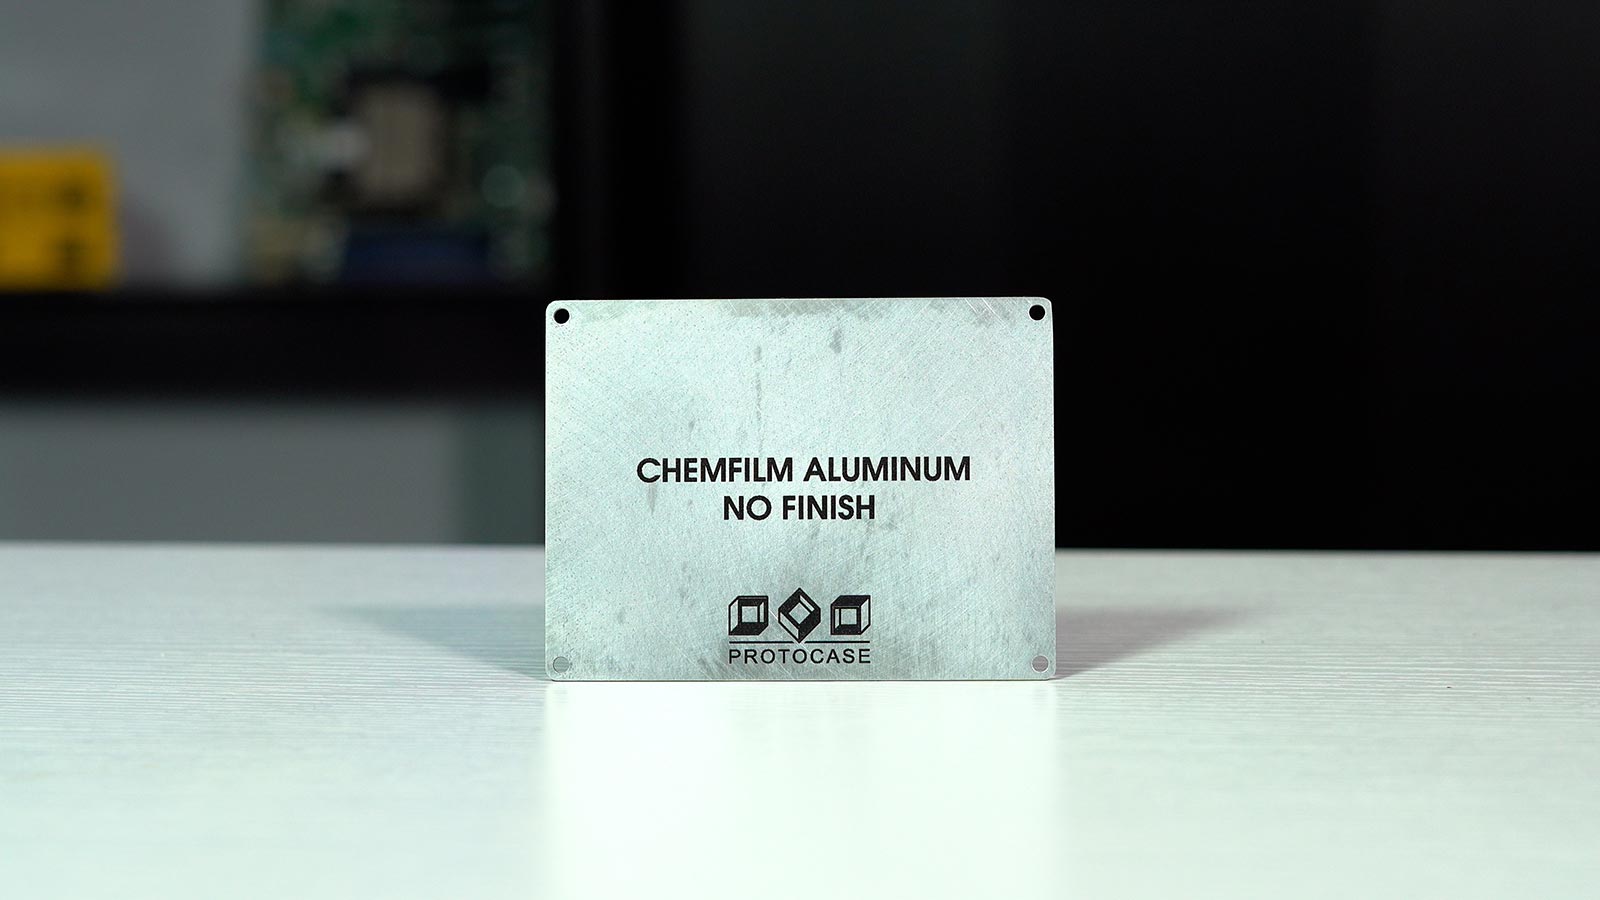 Chem Film Aluminum with No Finish